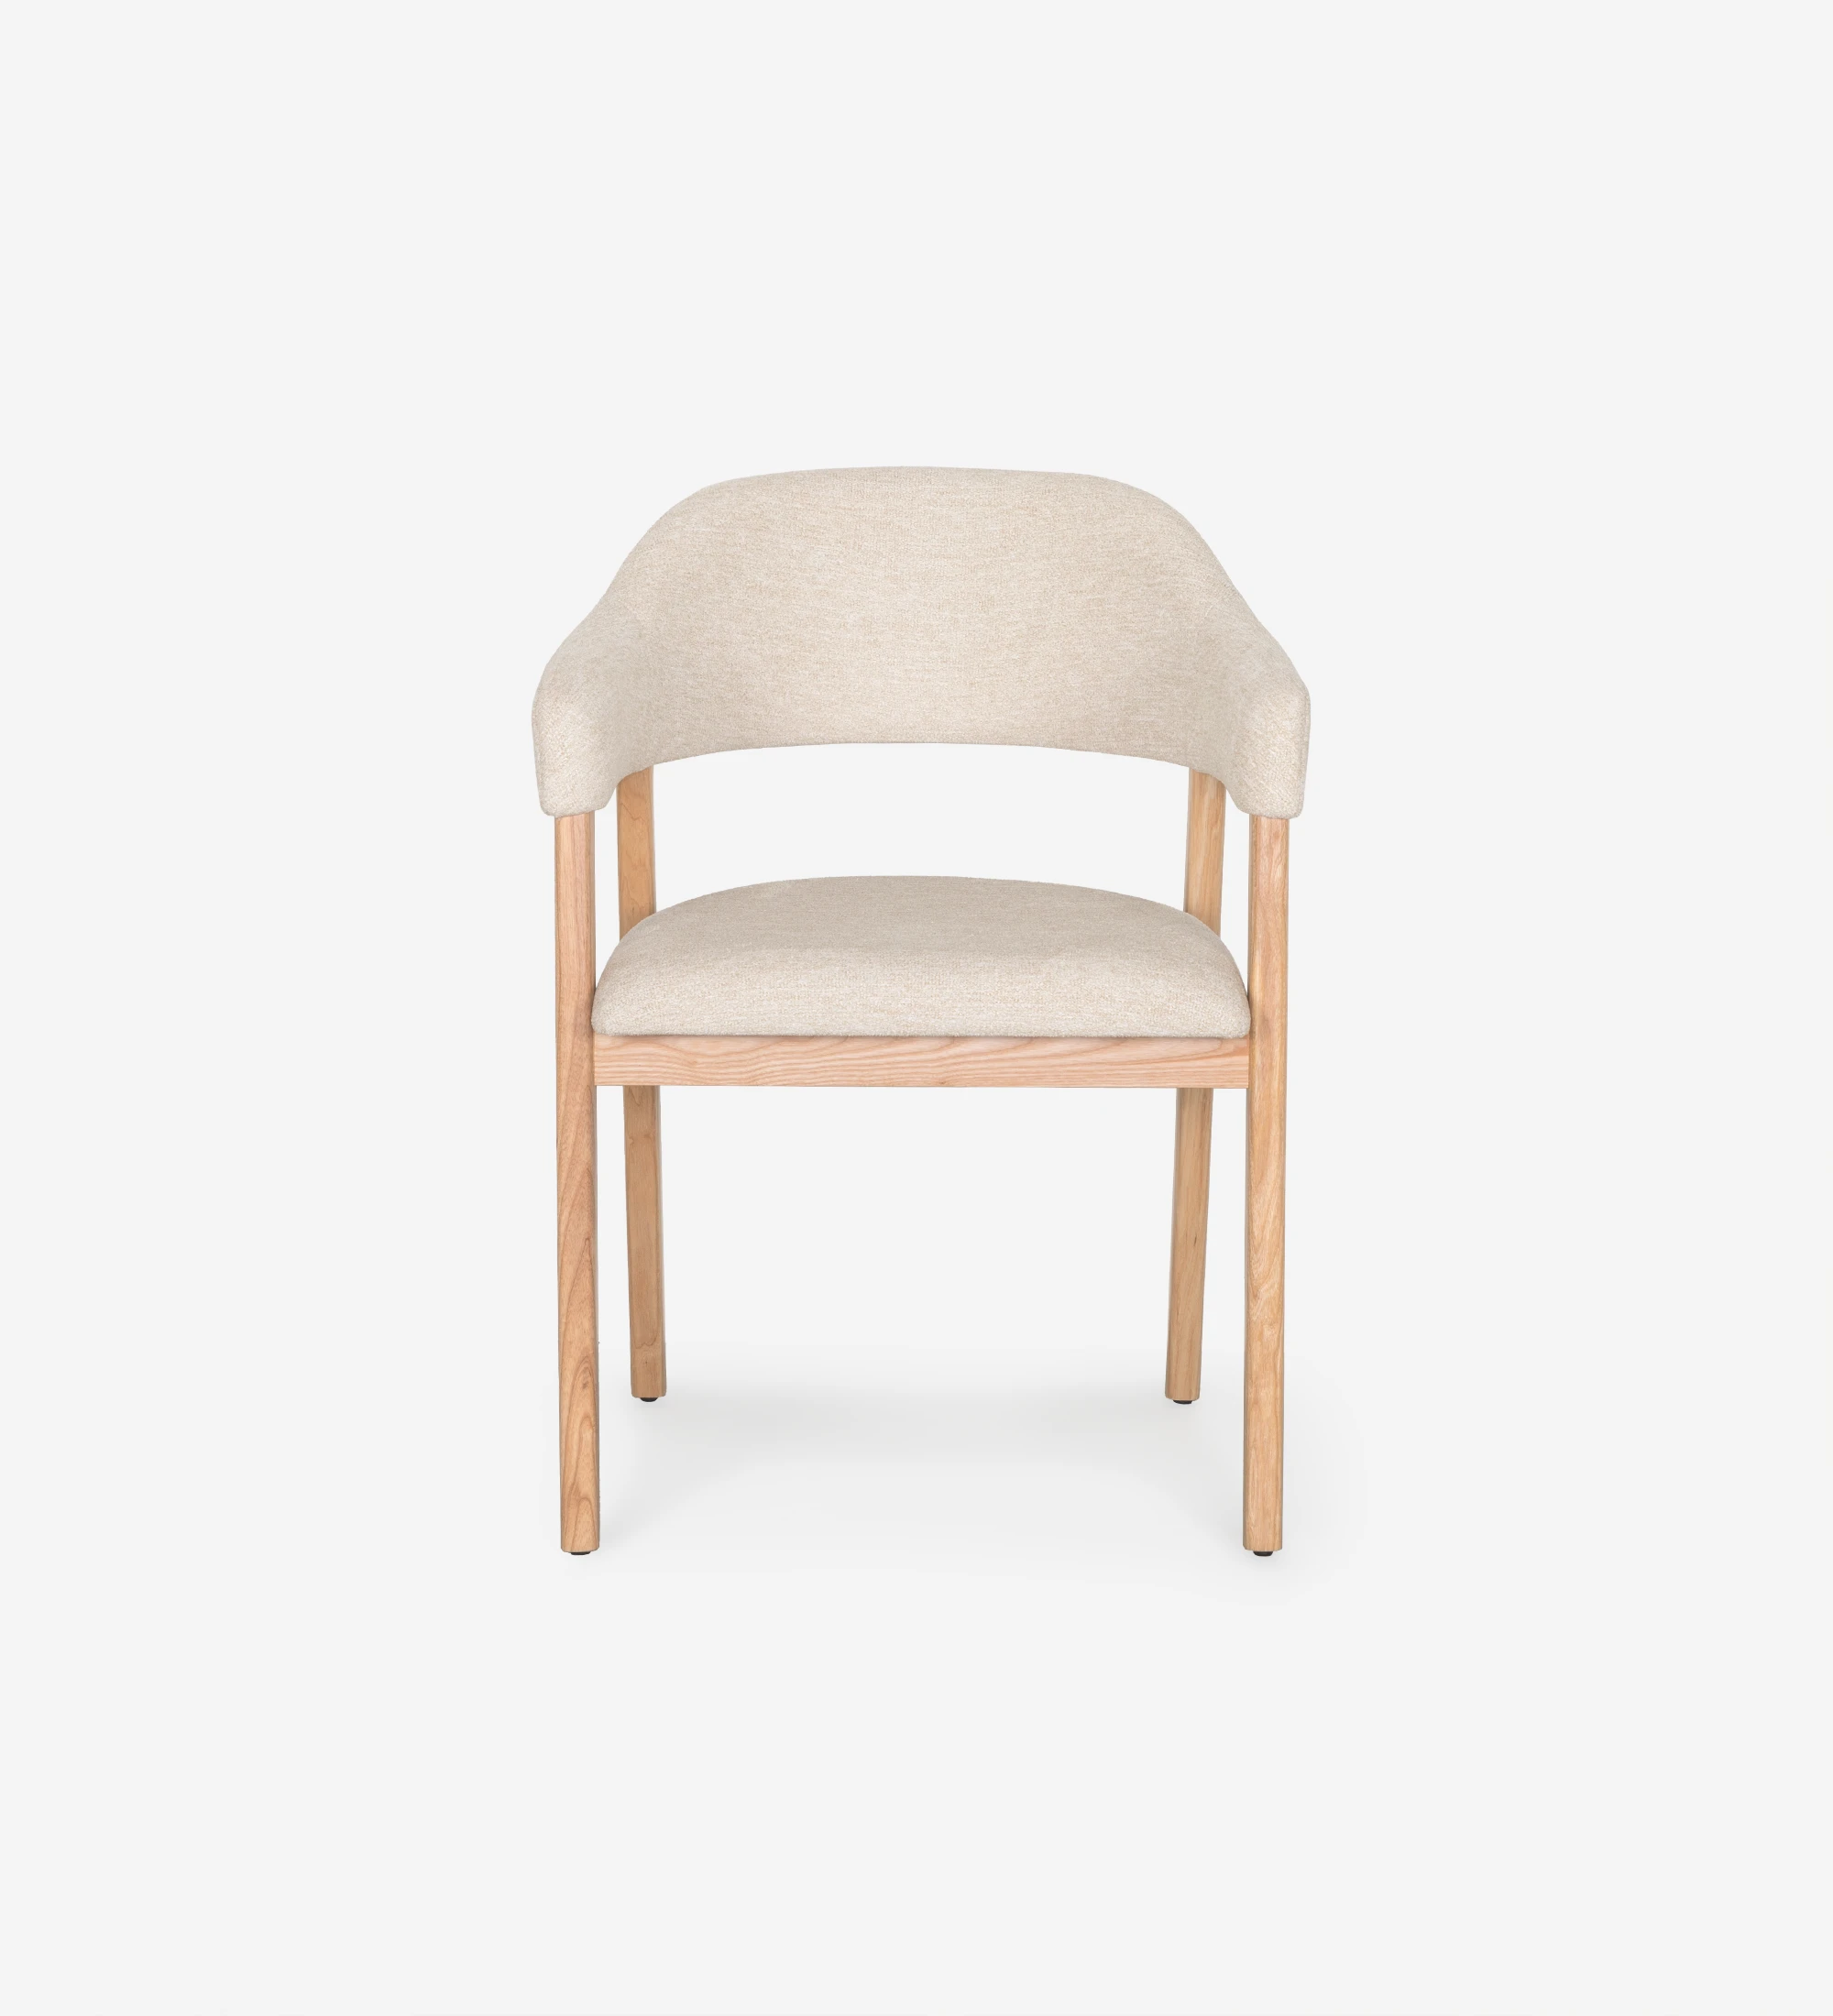 Chaise avec accoudoirs, en bois de frêne naturel, avec assise et dossier recouverts de tissu